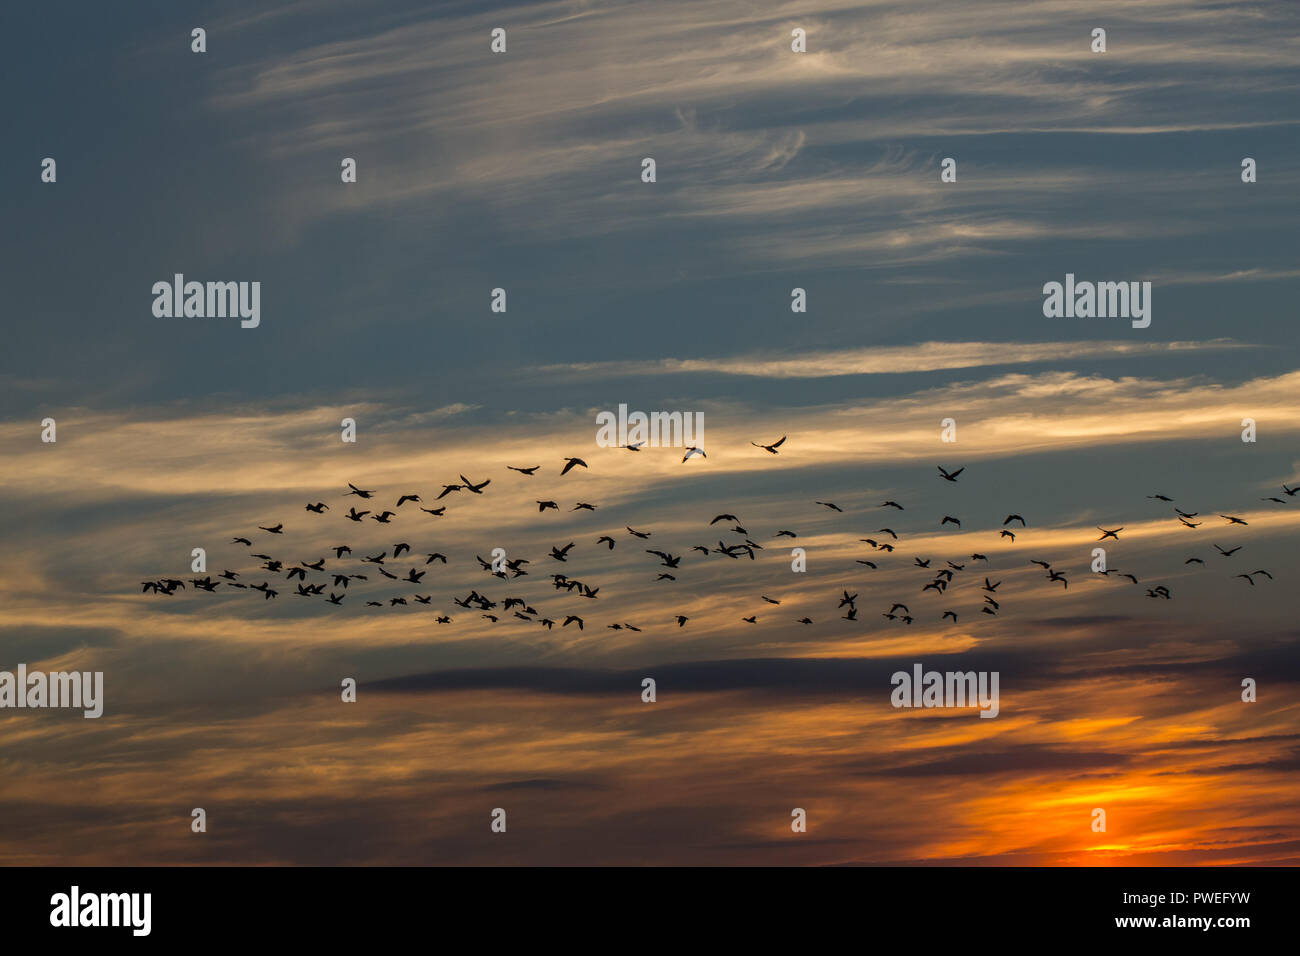 Graugänse (Anser anser). Knäuel, Vögel in Silhouette gegen die untergehende Sonne beleuchteten Wolken Hintergrund, herbstliche Abendlicht. Ingham, Norfolk. Oktober. Stockfoto